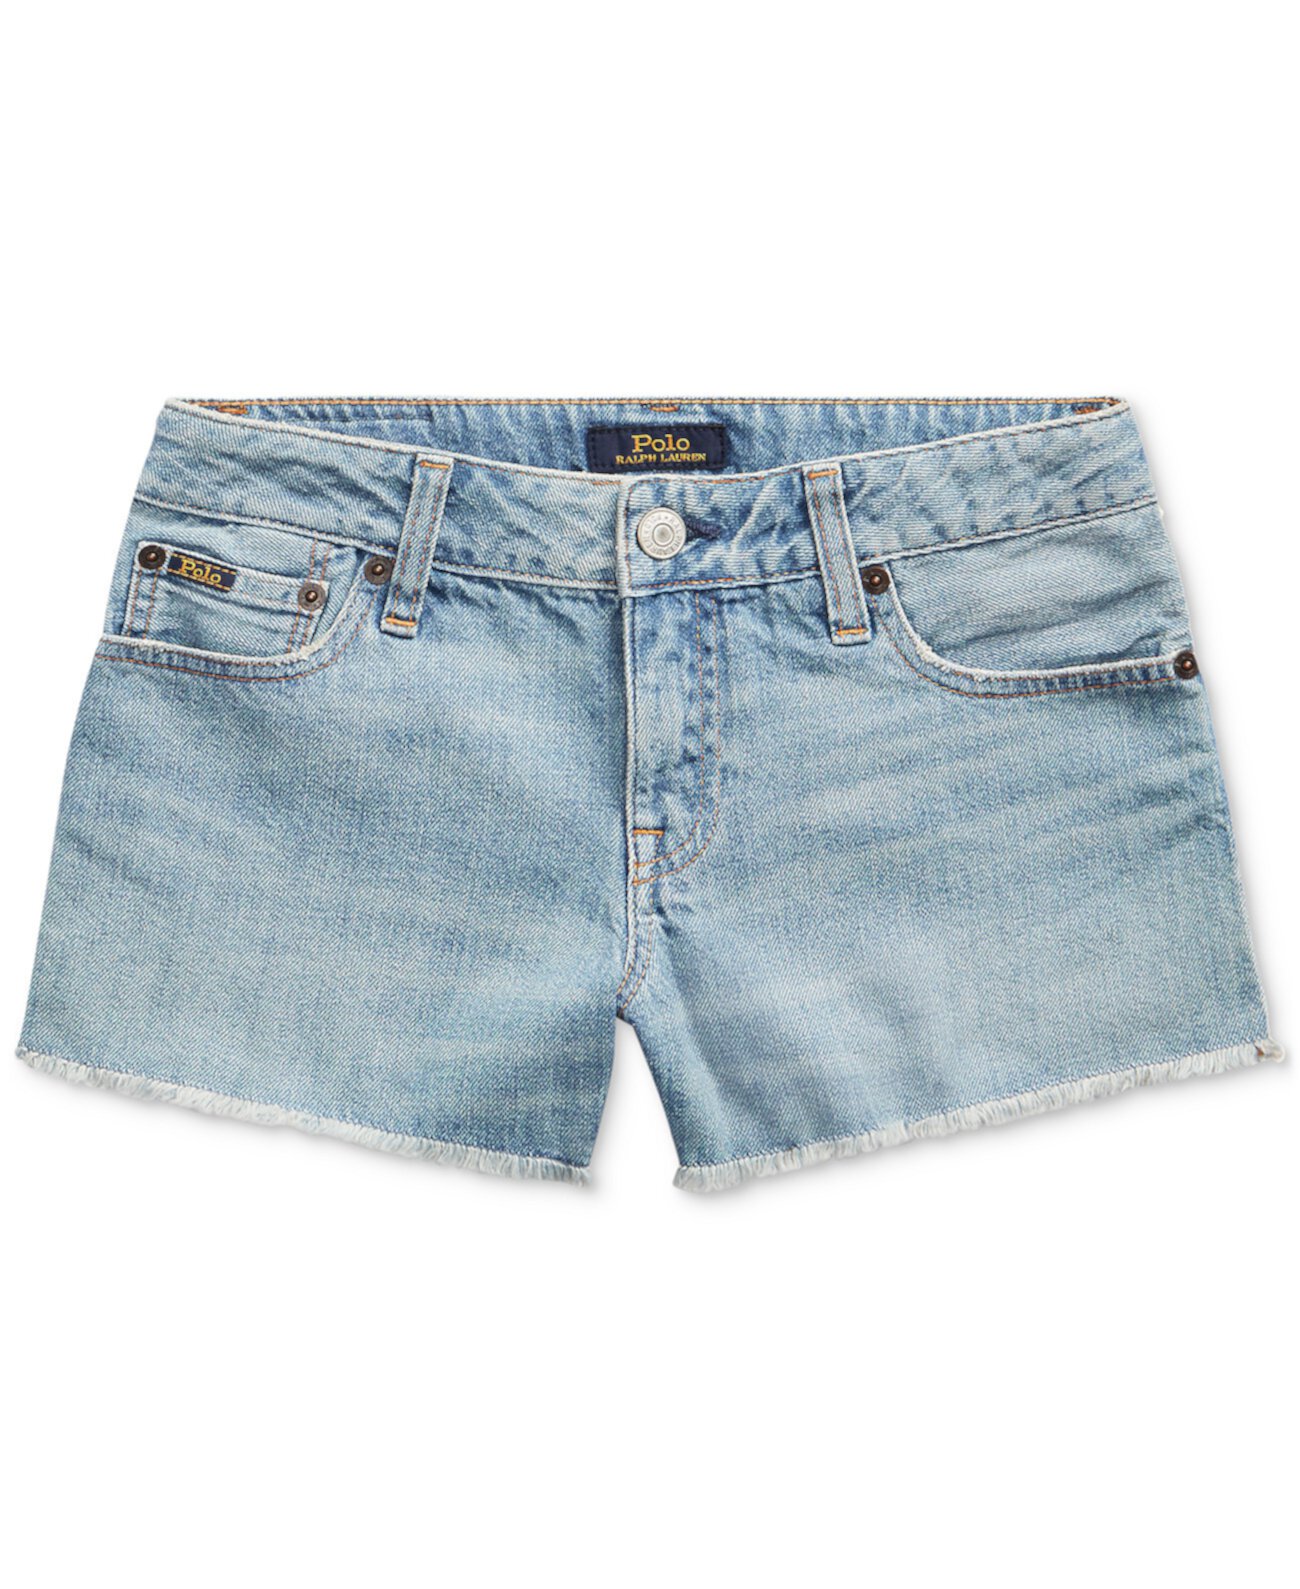 Хлопчатобумажные джинсовые шорты Big Girls Polo Ralph Lauren